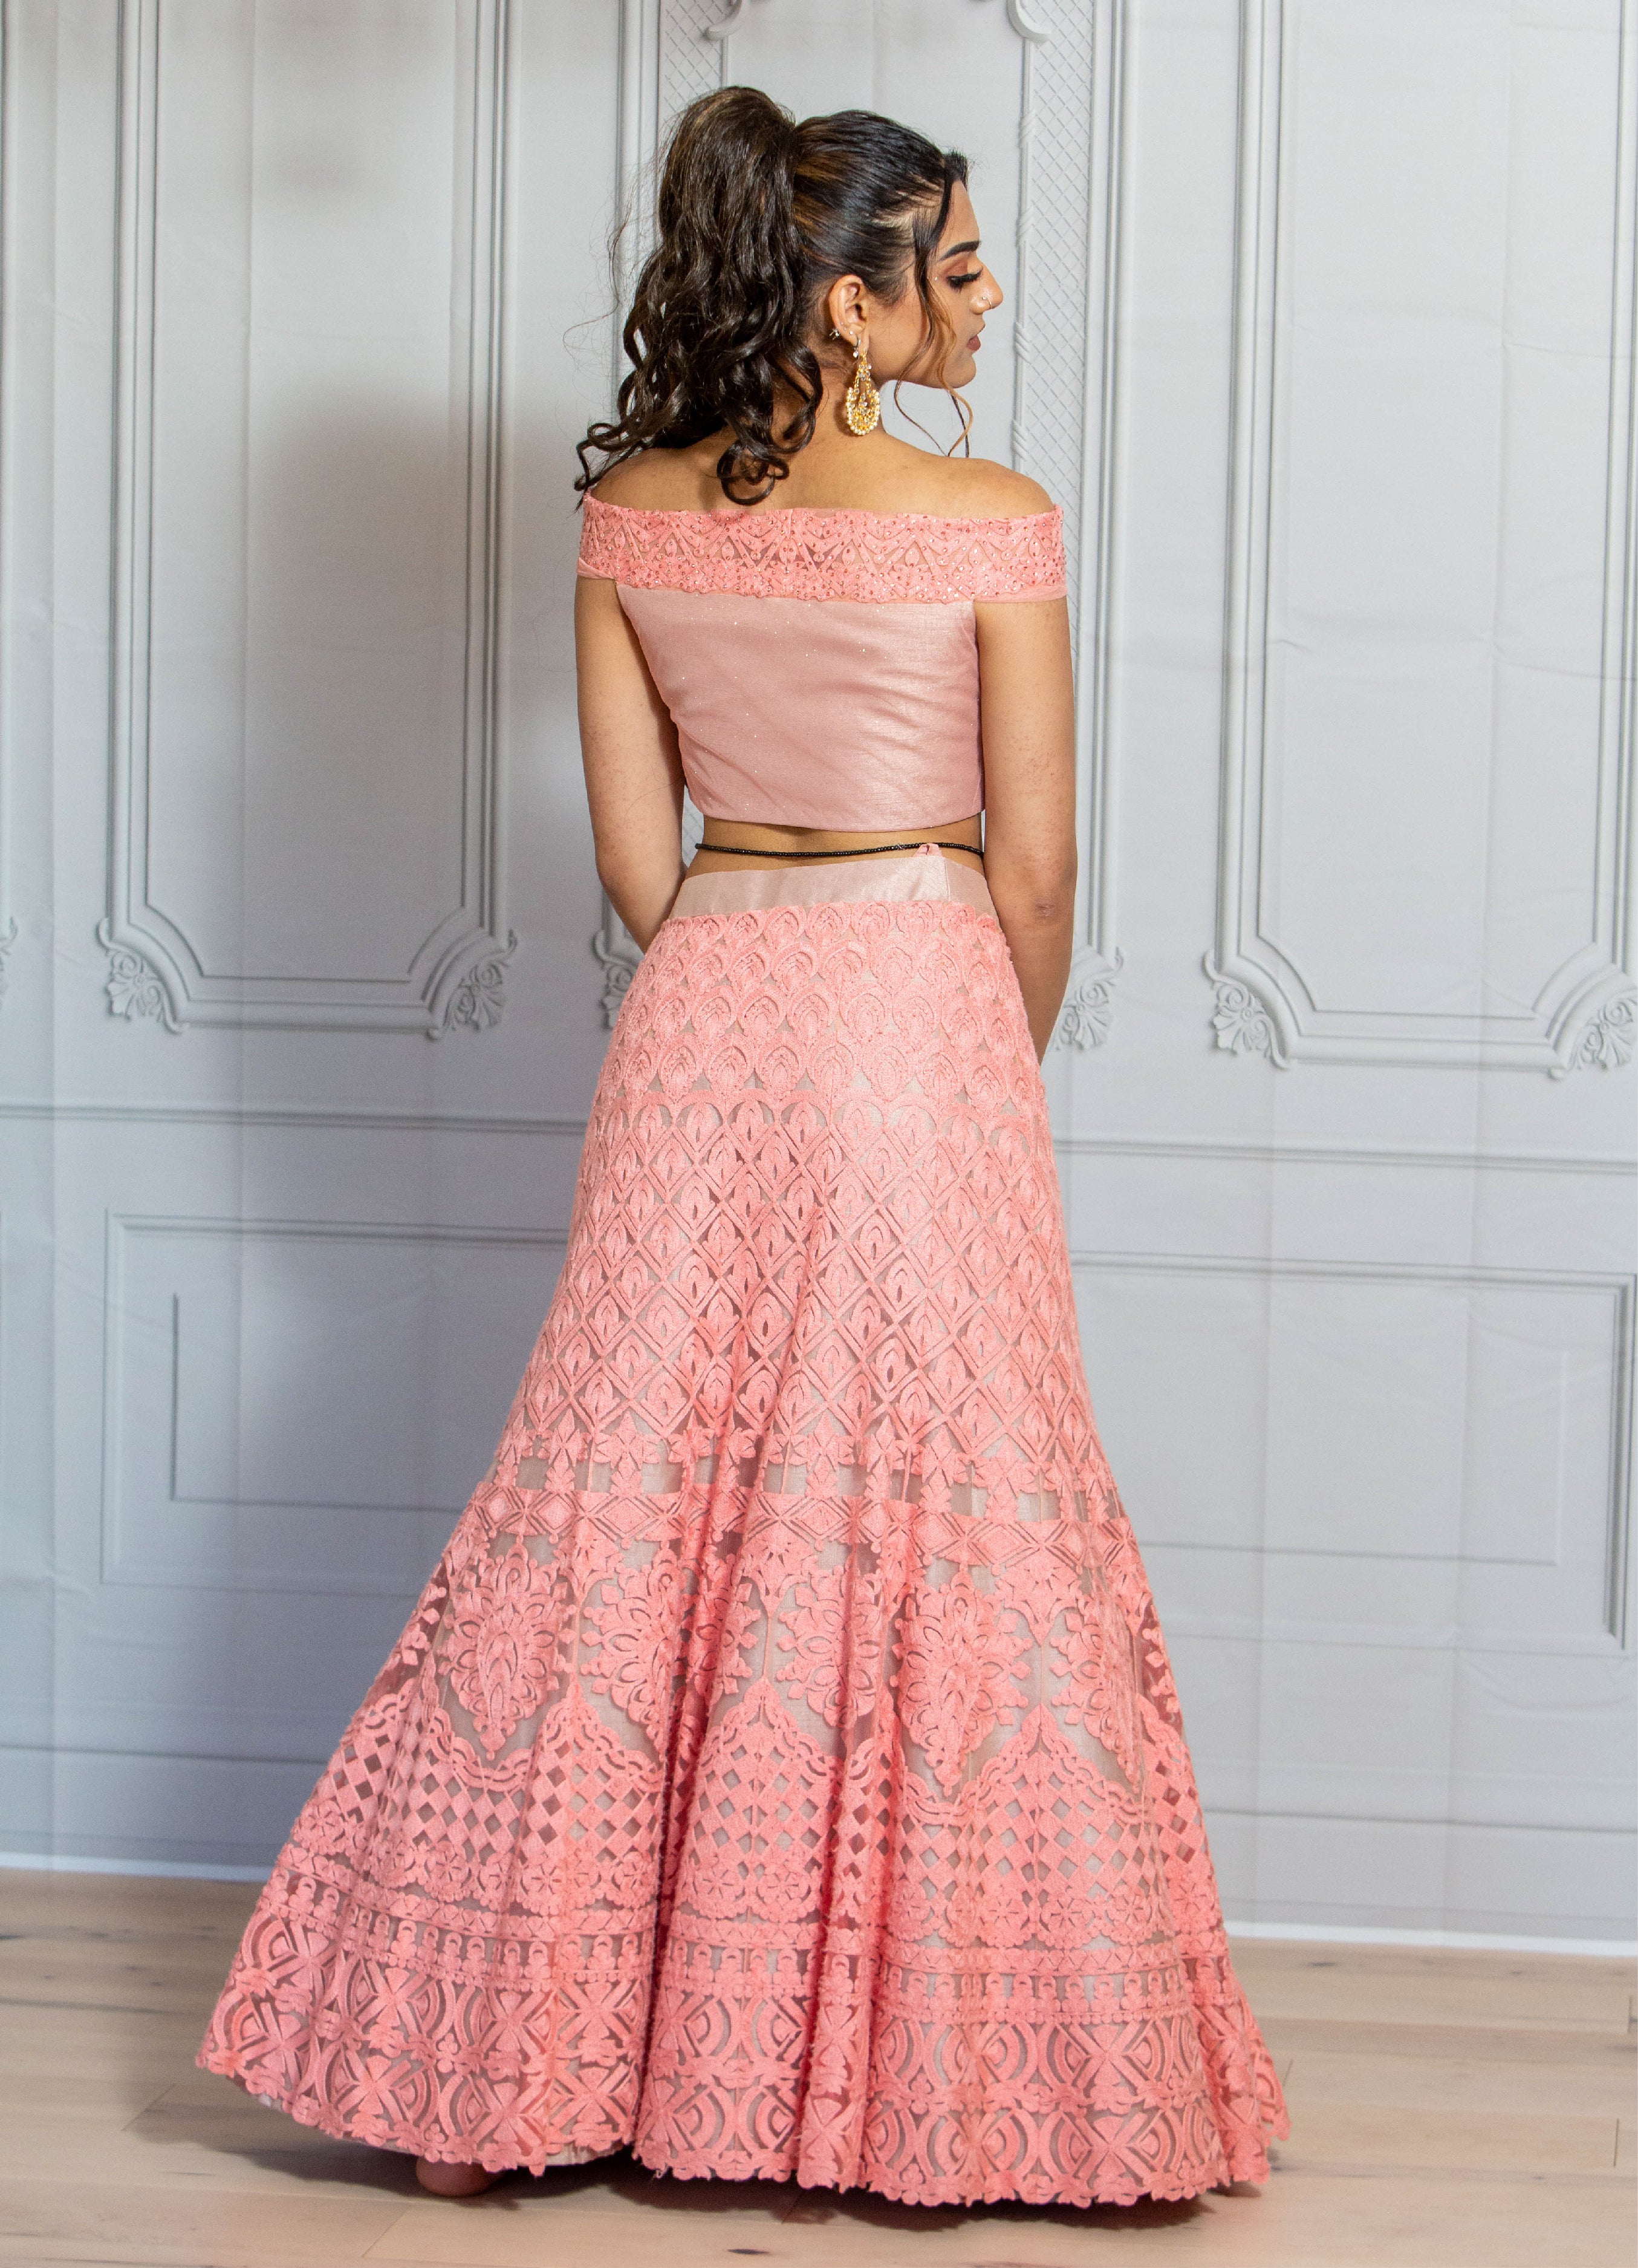 Ethnic Peach Color Fancy Heavy Embroidery Bridal Wedding Wear Lehenga Choli  -3032144054